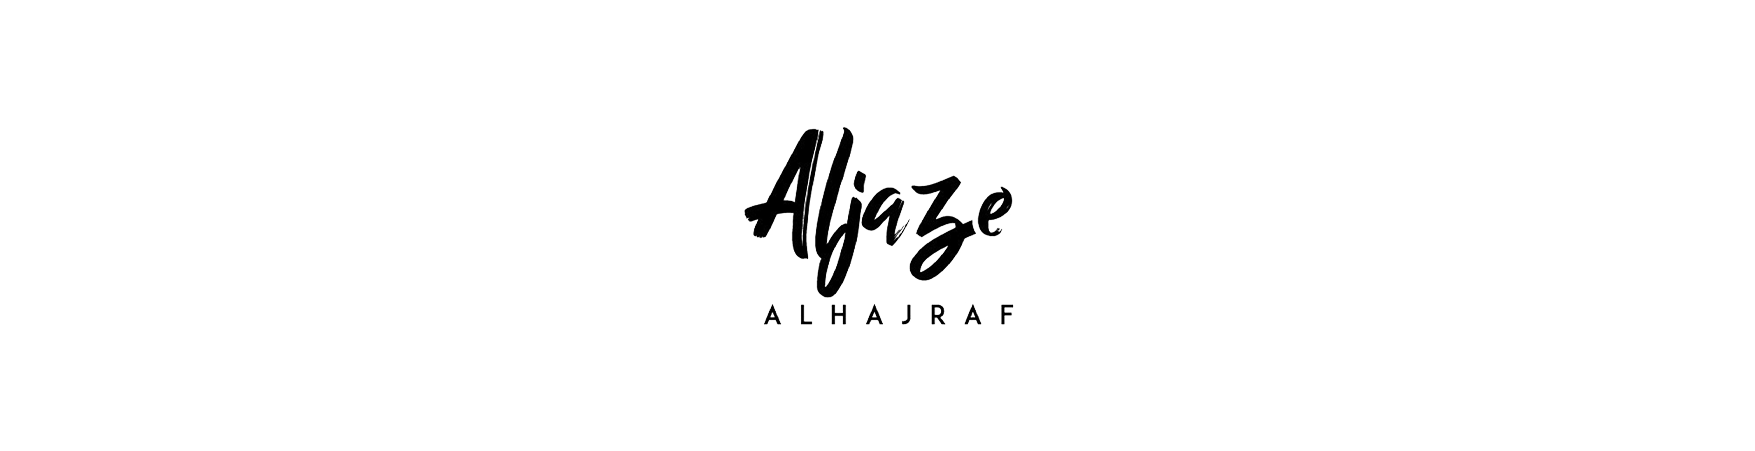 Aljaze Alhajraf